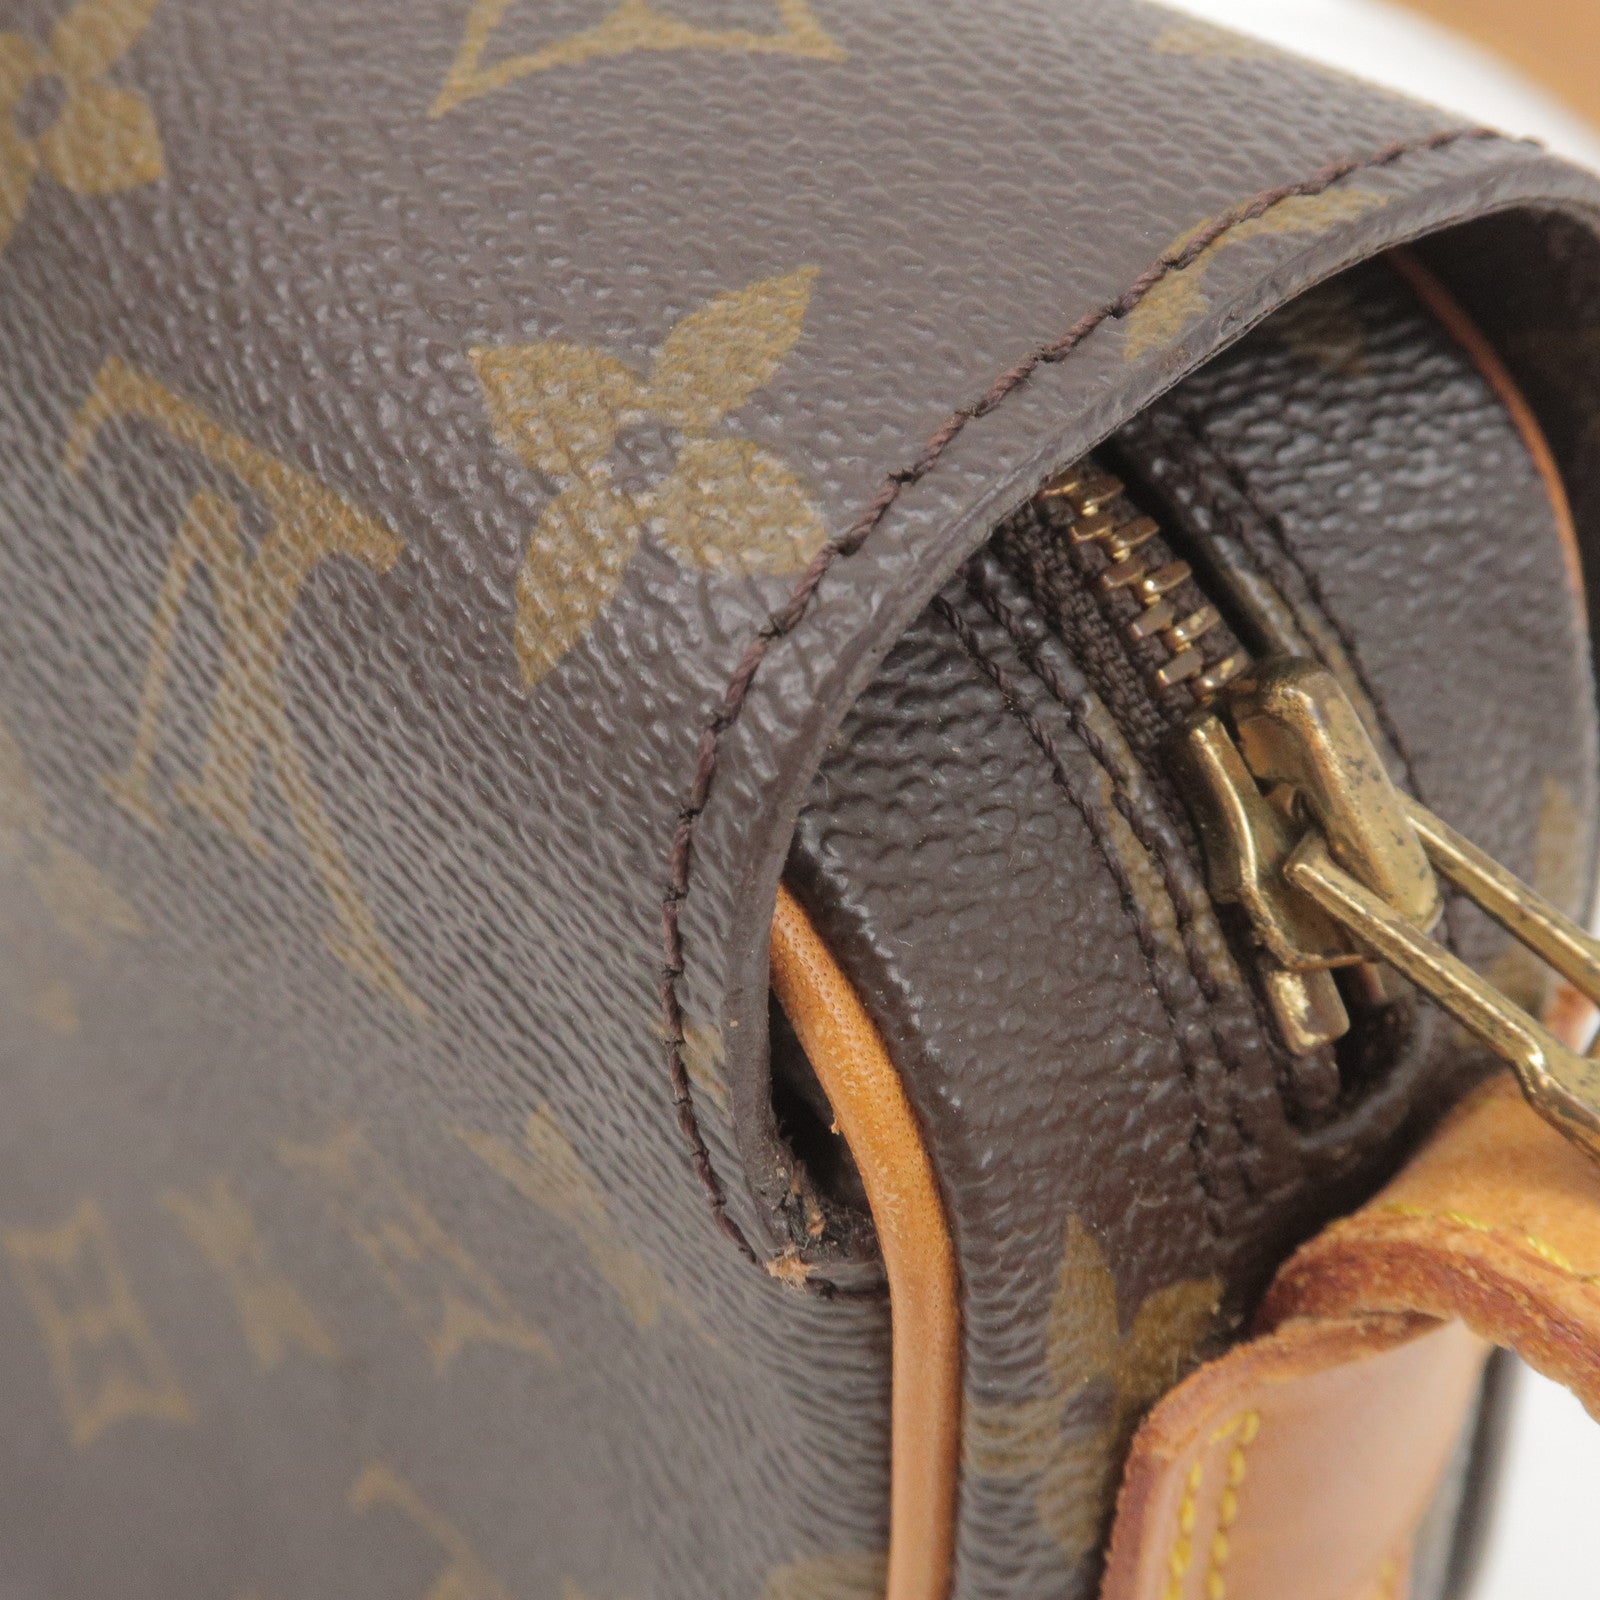 Louis Vuitton, Bags, Authenticlouis Vuitton Monogram Saint Germain 24  Shoulder Bag